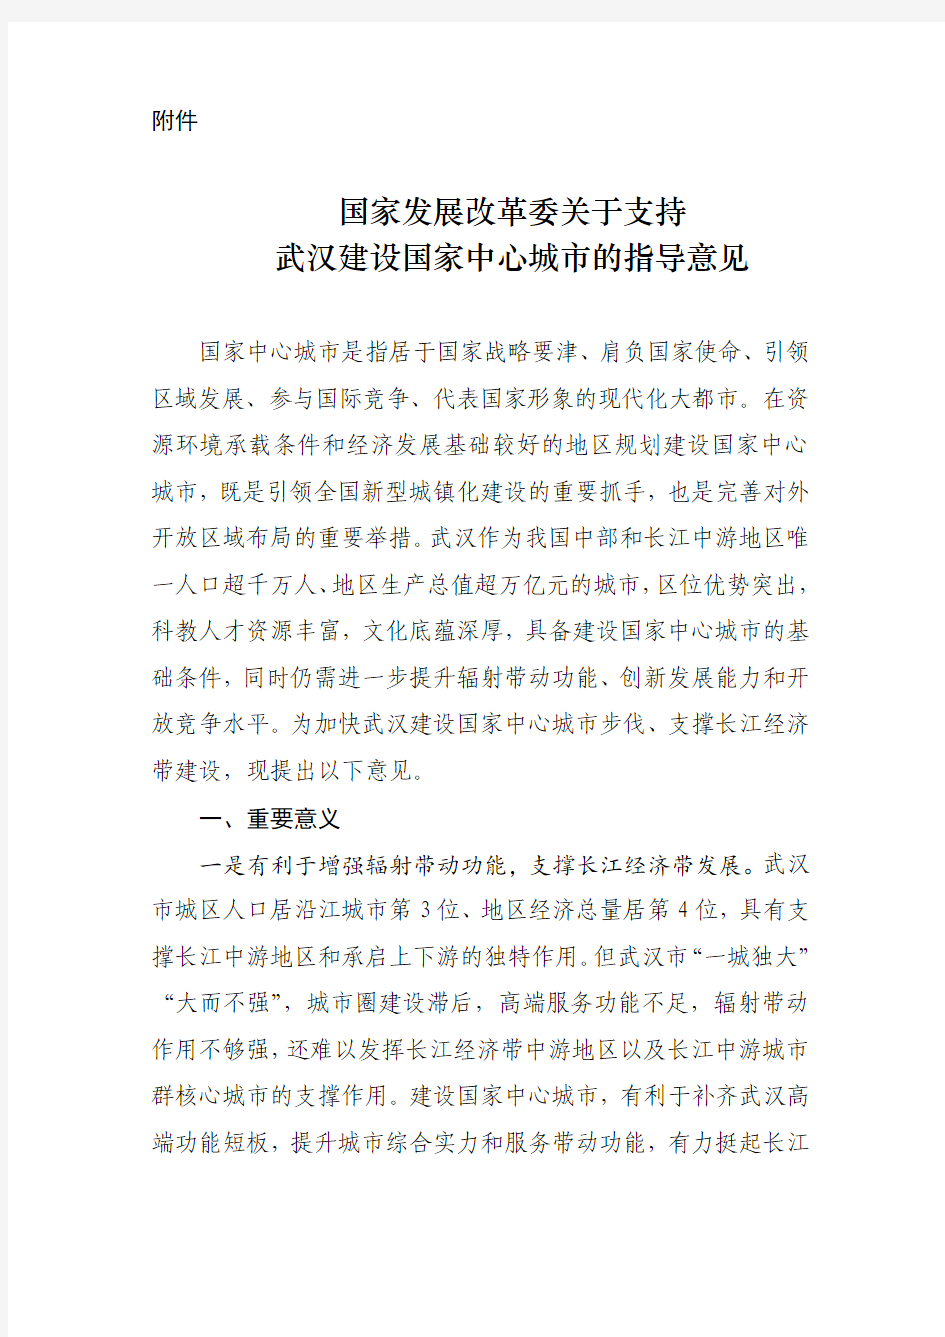 国家发展改革委关于支持武汉建设国家中心城市的指导意见--中国市场经济研究院